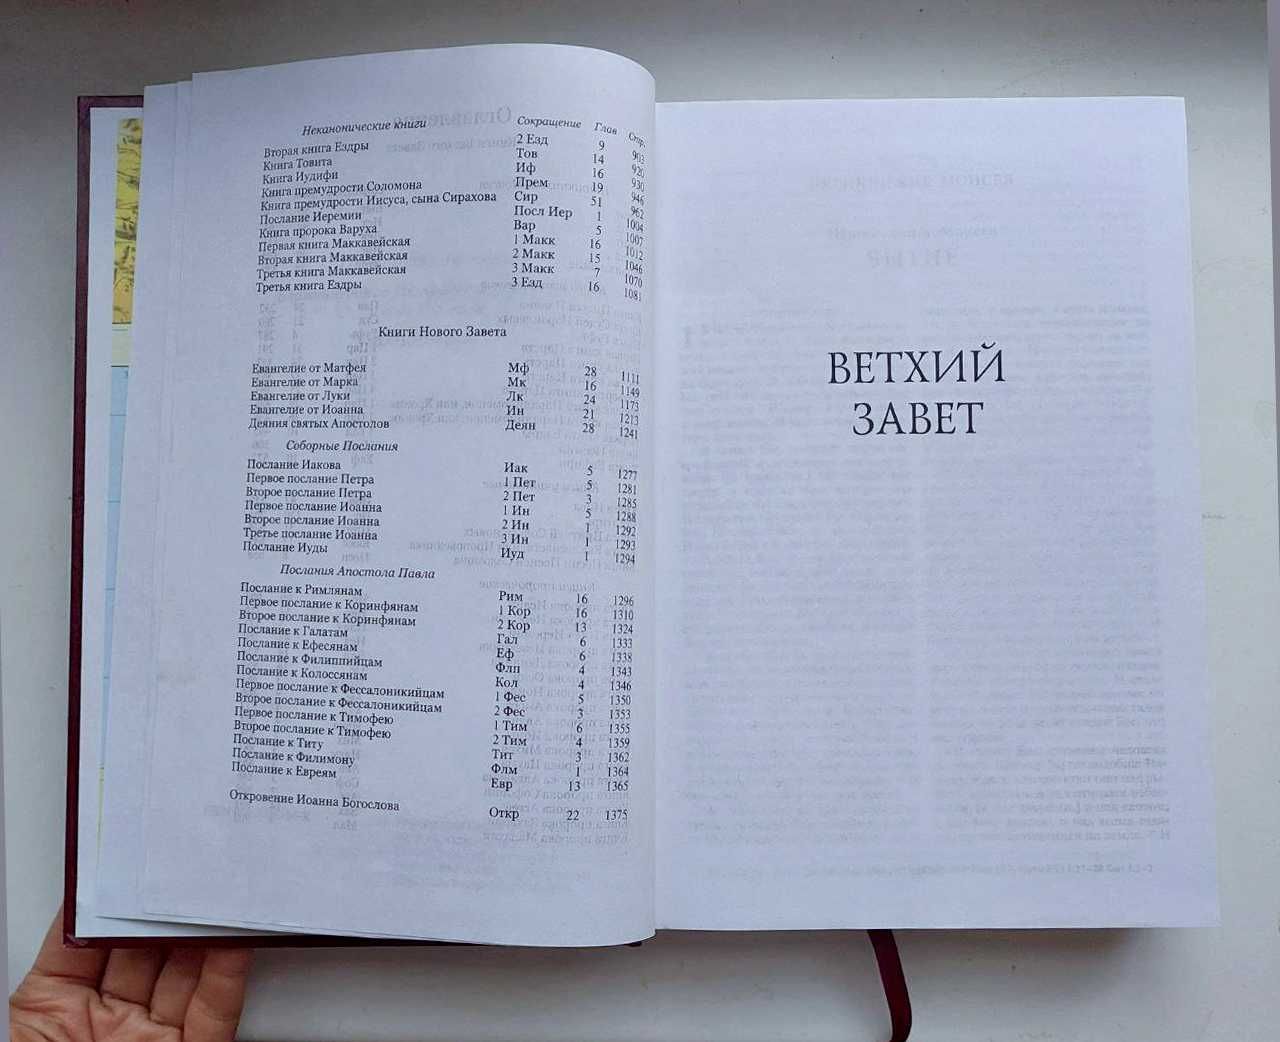 БИБЛИЯ - в русском переводе, Киев, 2004